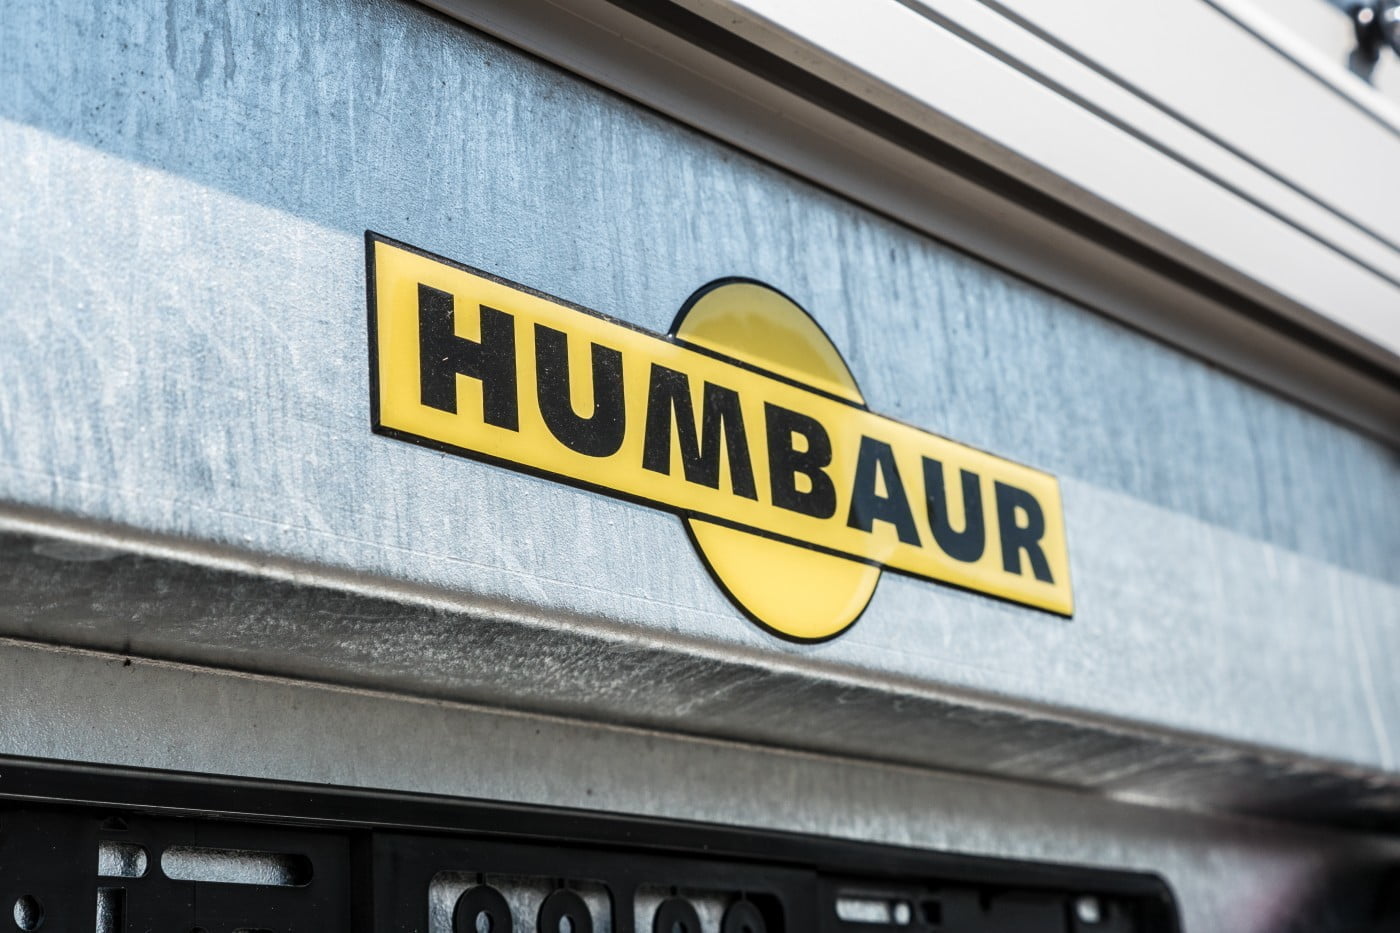 Humbaur Logo